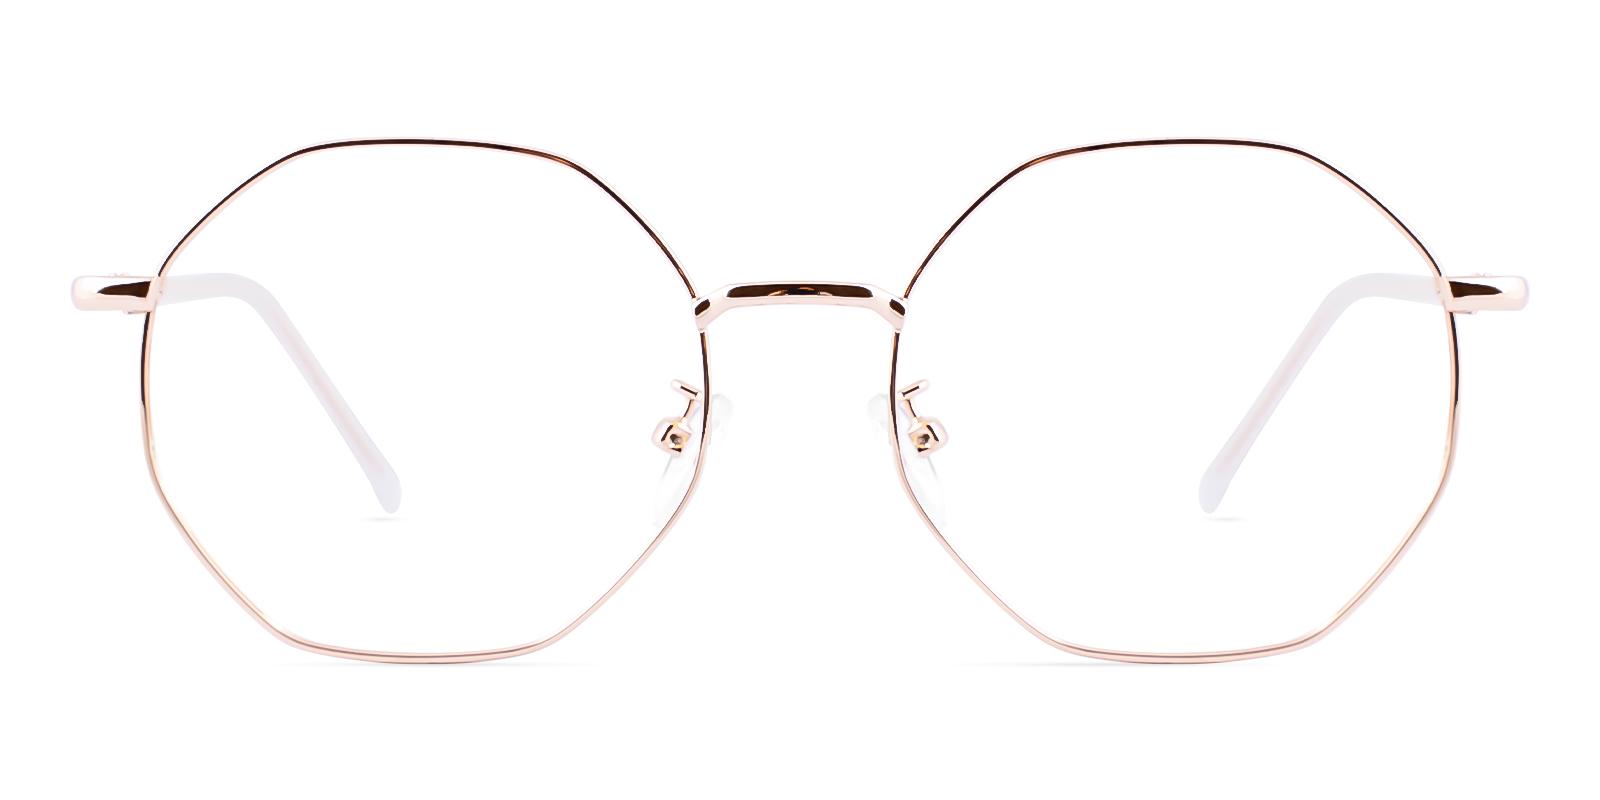 Tudin Rosegold Metal Eyeglasses , NosePads Frames from ABBE Glasses